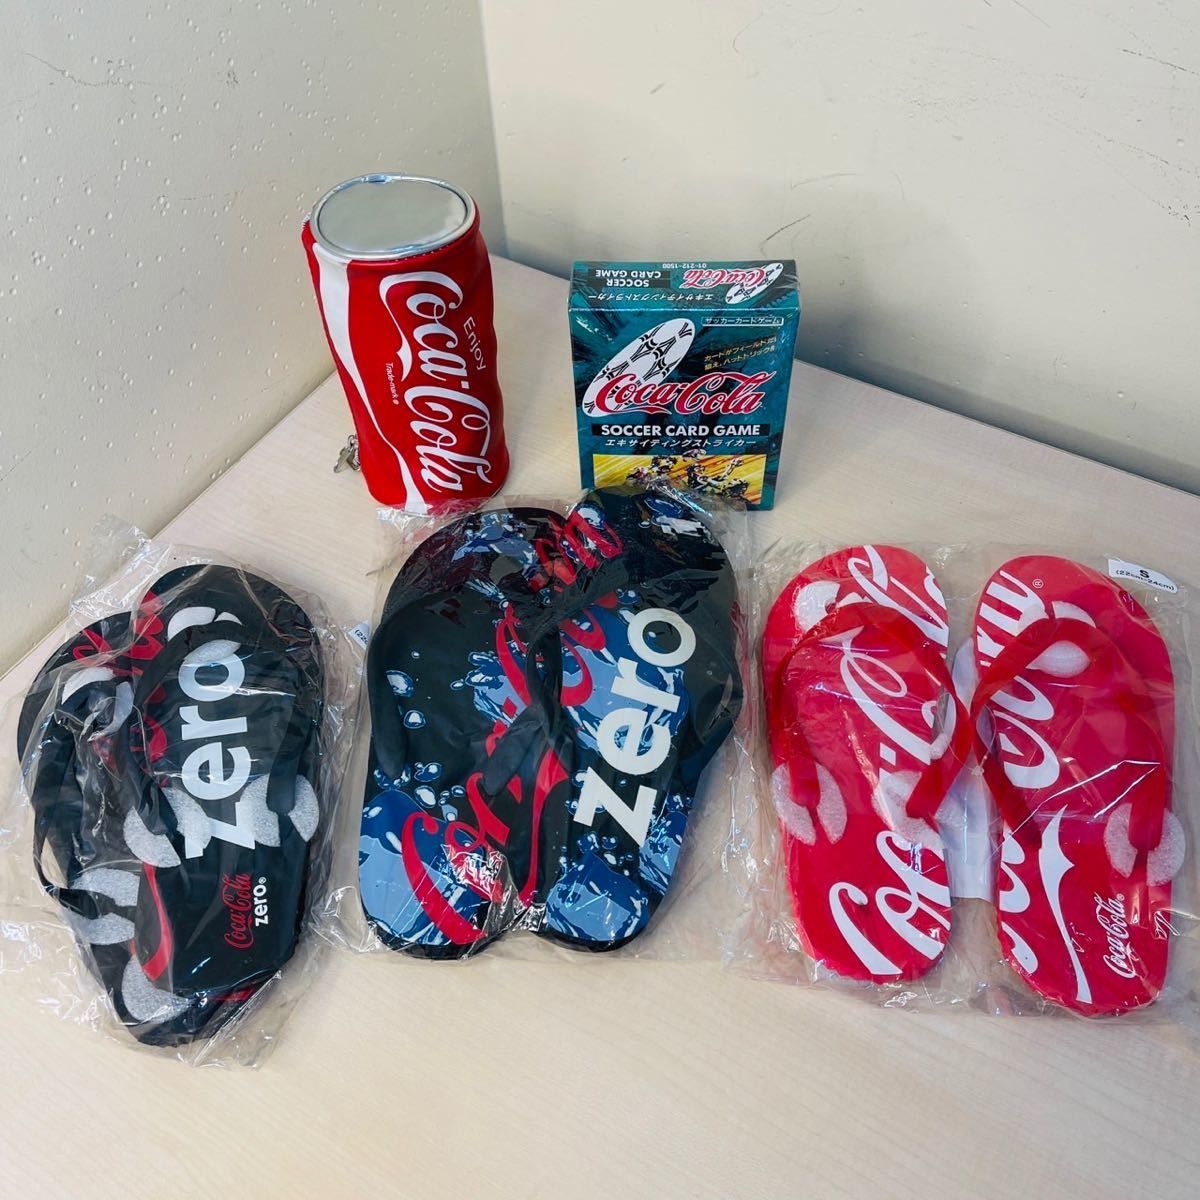 OST Coca -cola товары пары сандалия корпус -родитель